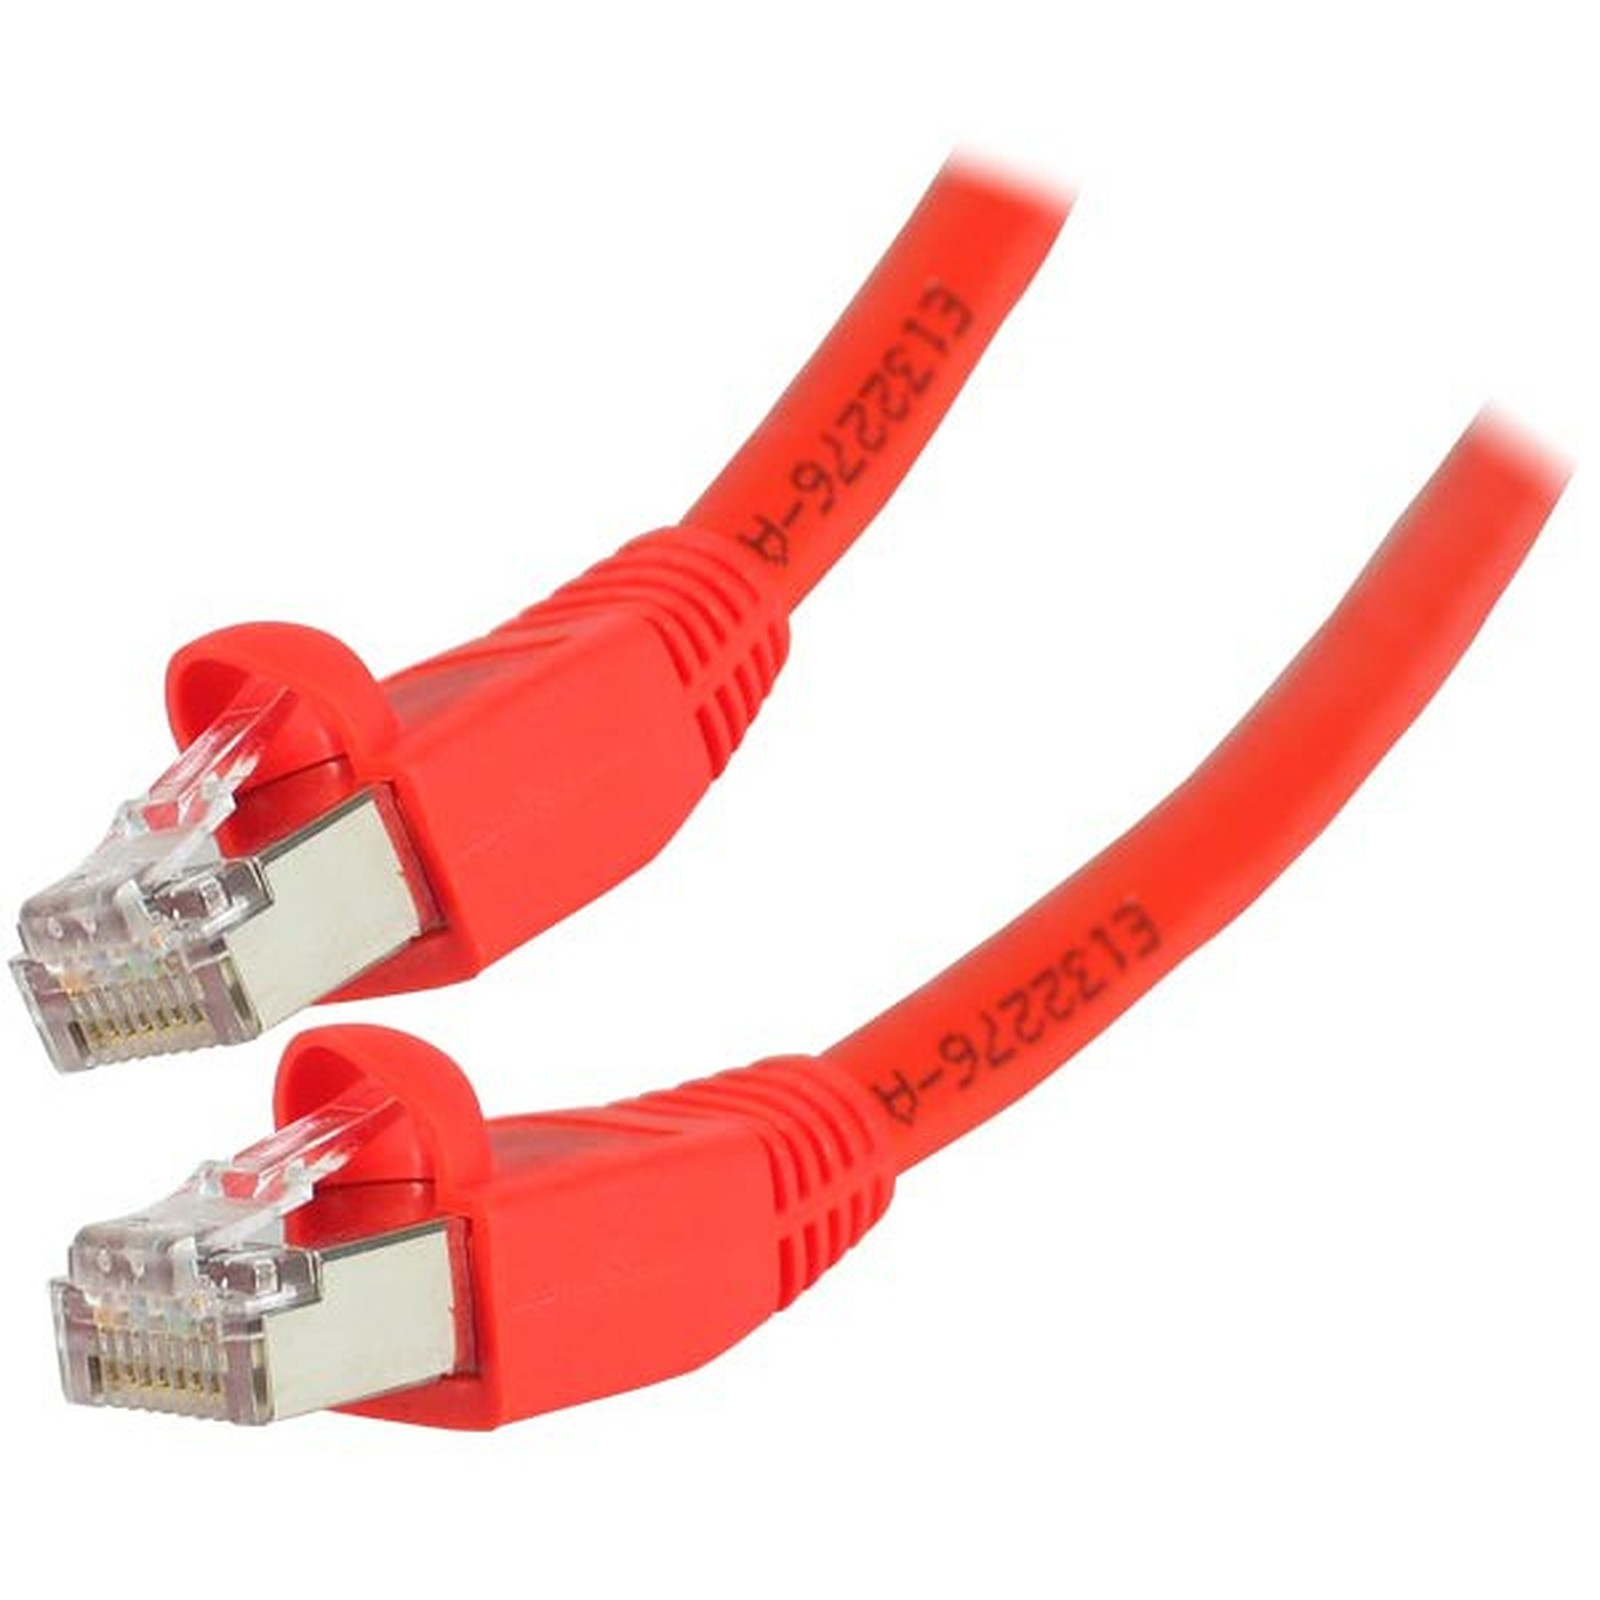 Cable RJ45 categorie 6 S/FTP 1 m (Rouge) - Cable RJ45 Generique